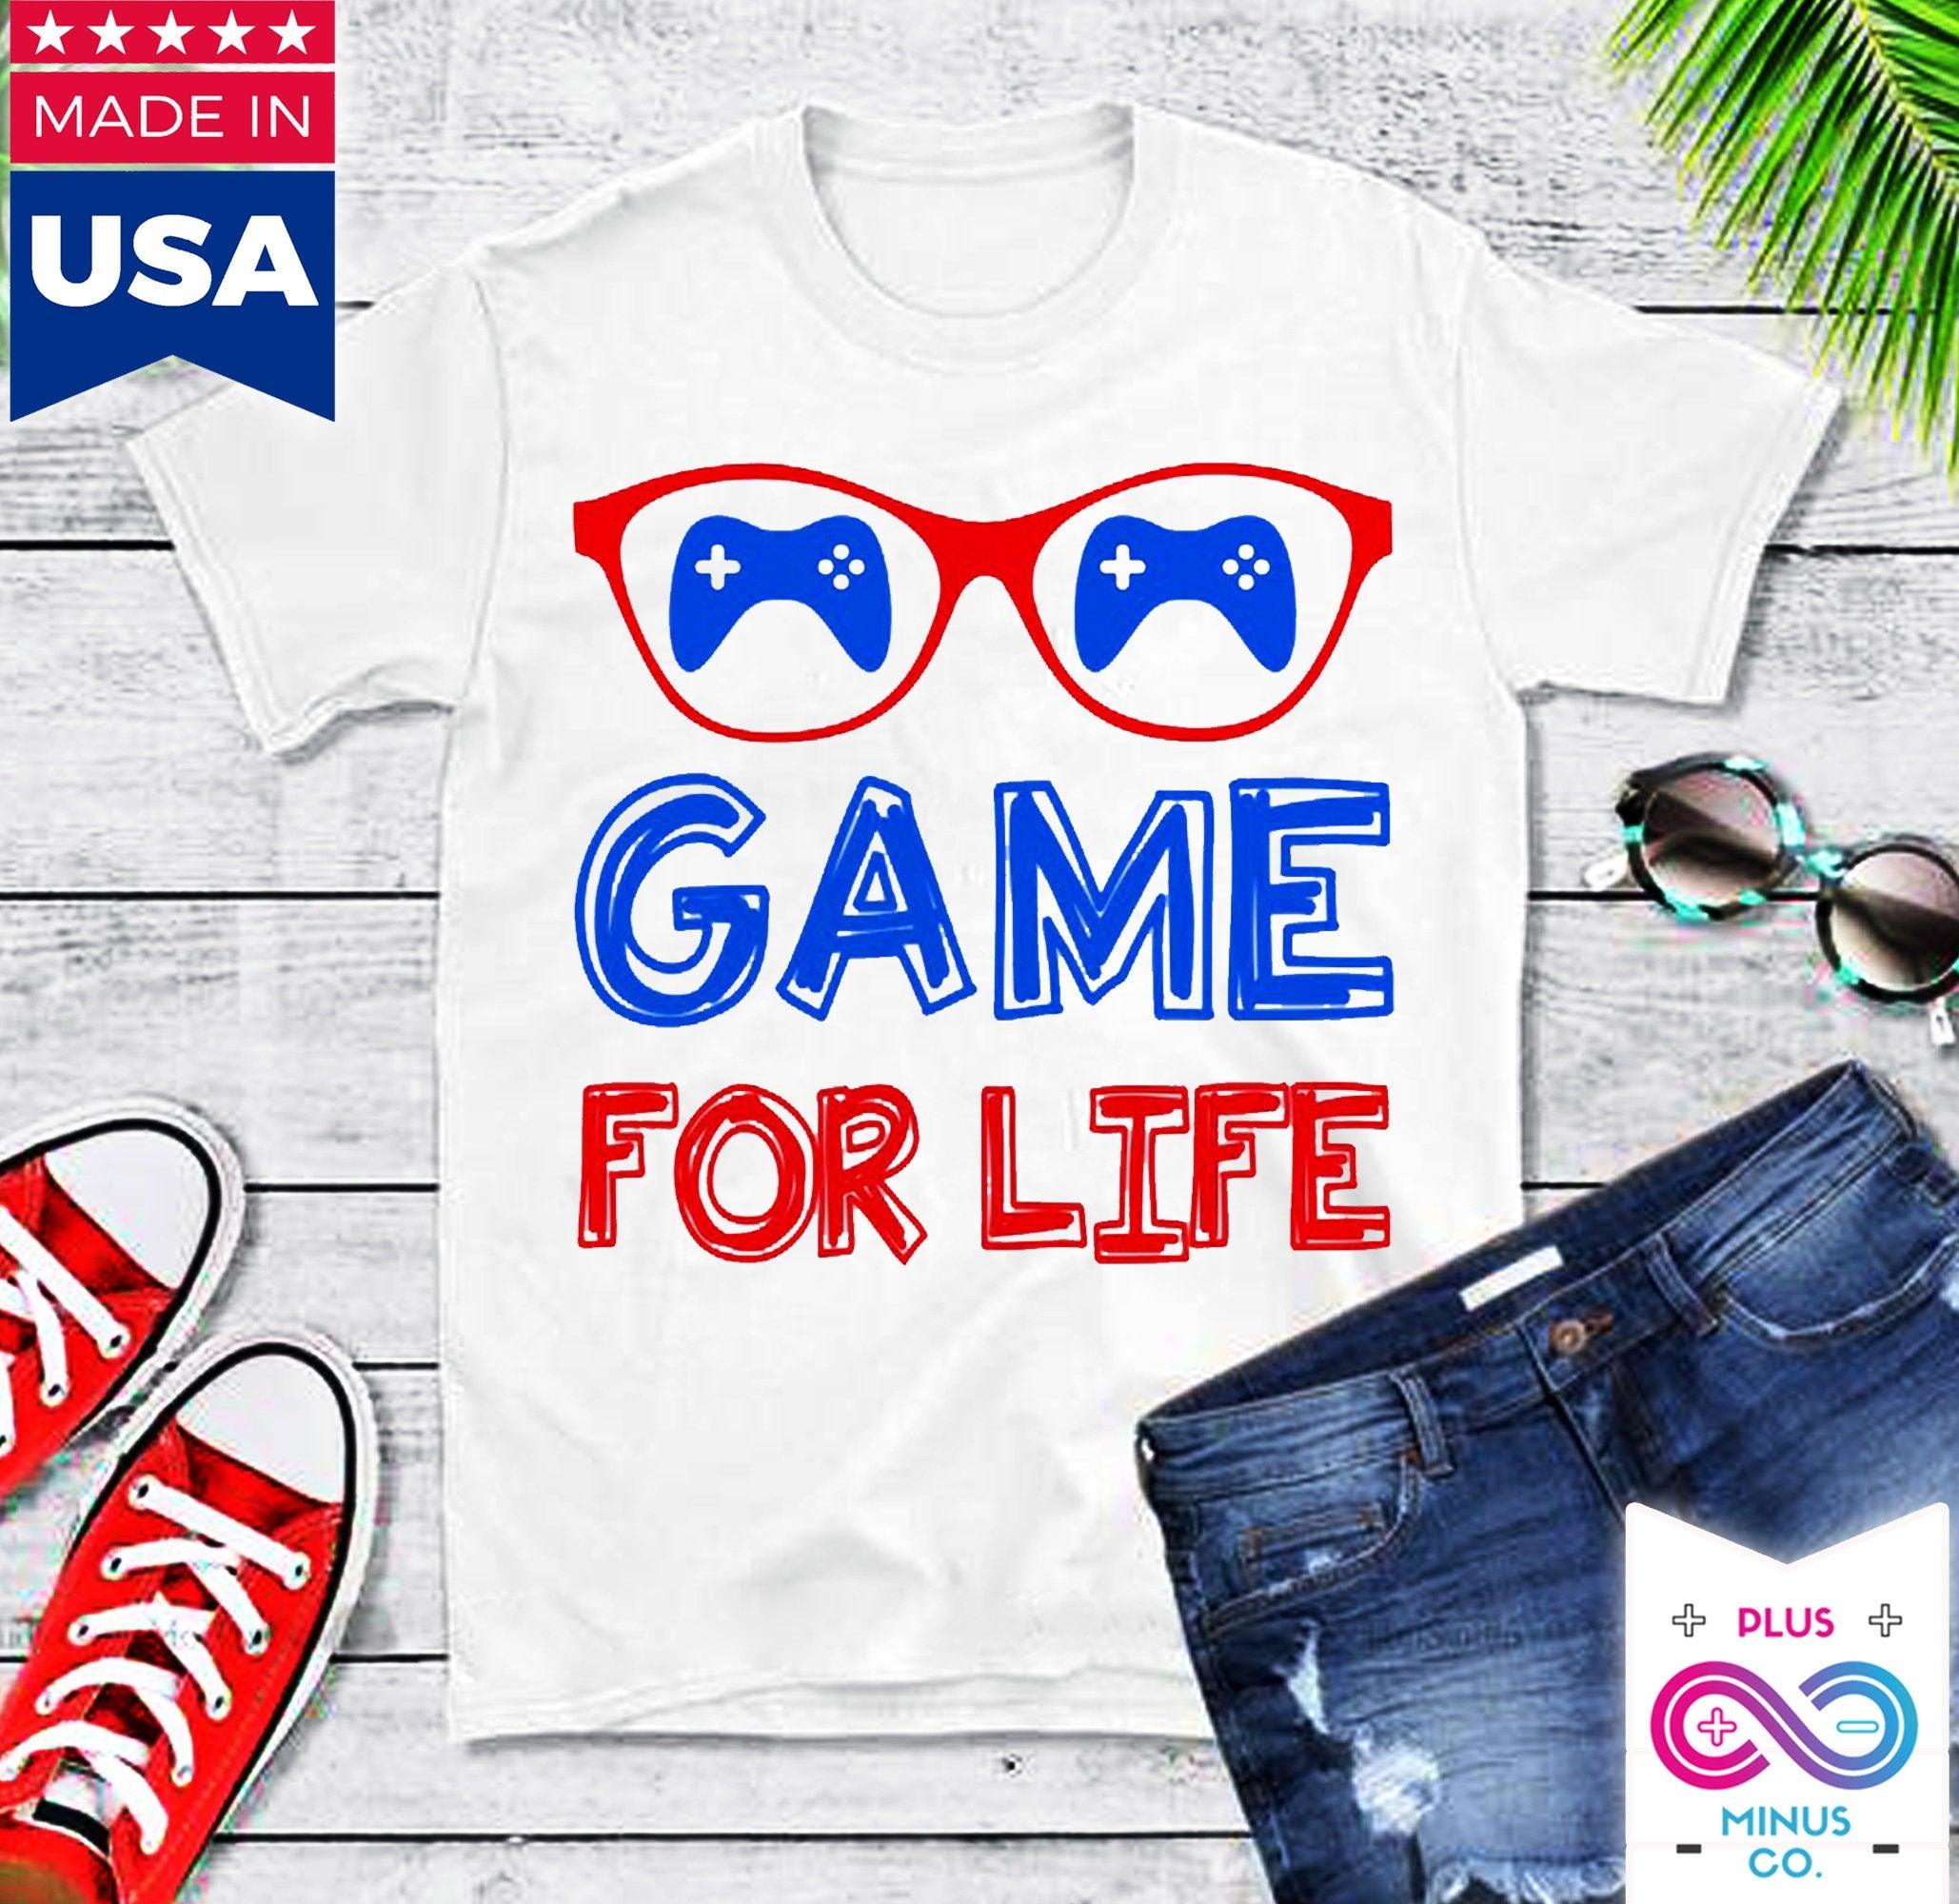 Yaşam Boyu Oyun Tişörtleri || Oyuncu Gömleği || Oyuncu Gömleği || Oyun Can Gömleği || Oyuncu Hediyesi || Video Oyunu Gömleği || Erkek Arkadaşa Hediye - plusminusco.com